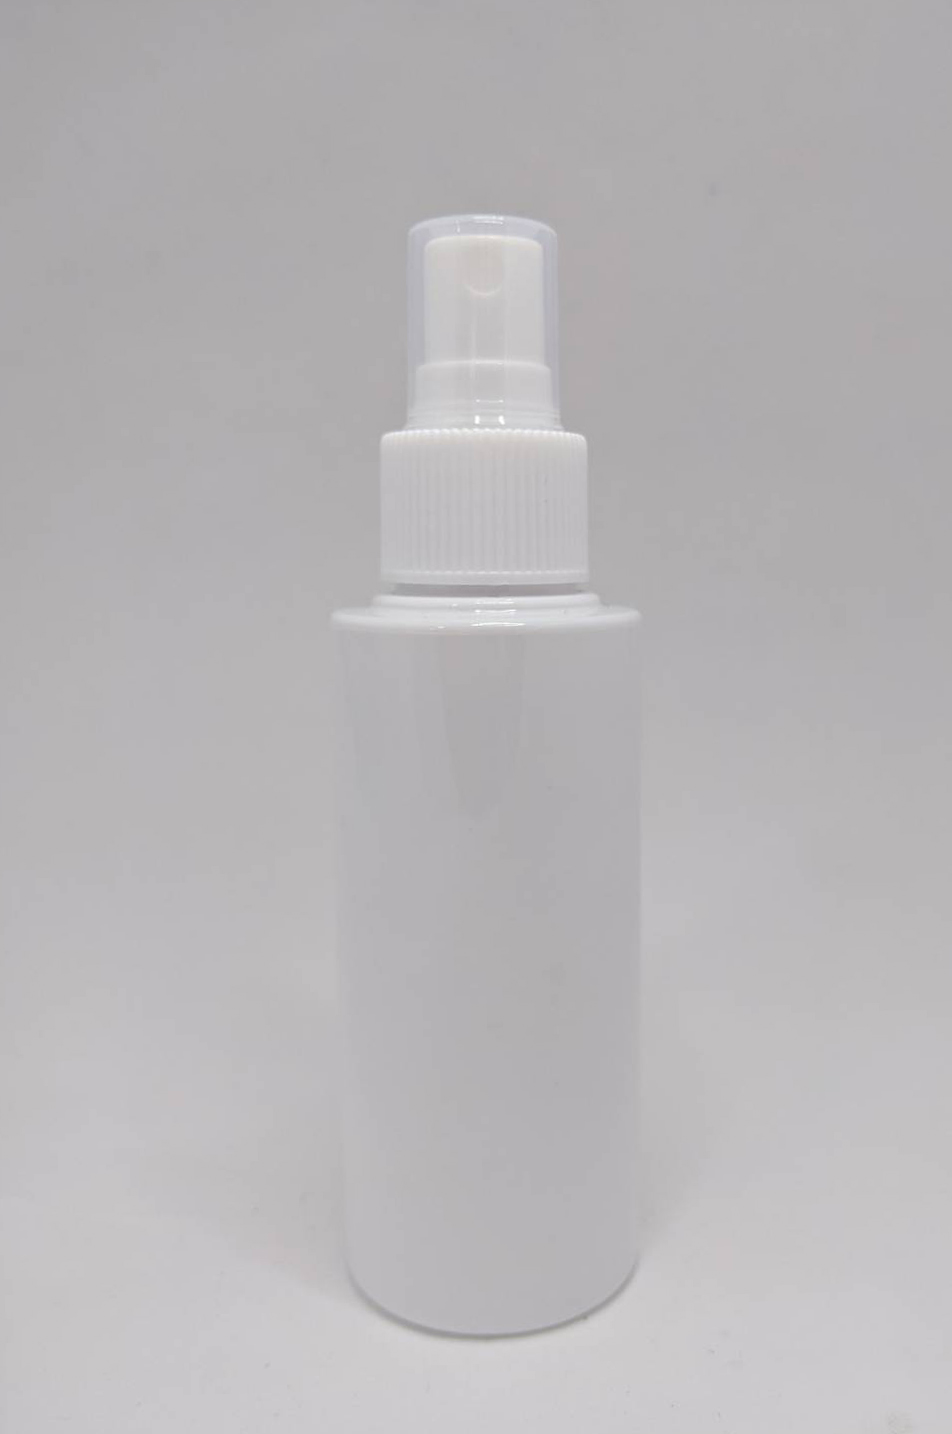 美妆塑胶分装喷雾瓶100ML台湾制白色平肩圆形分装喷雾空瓶